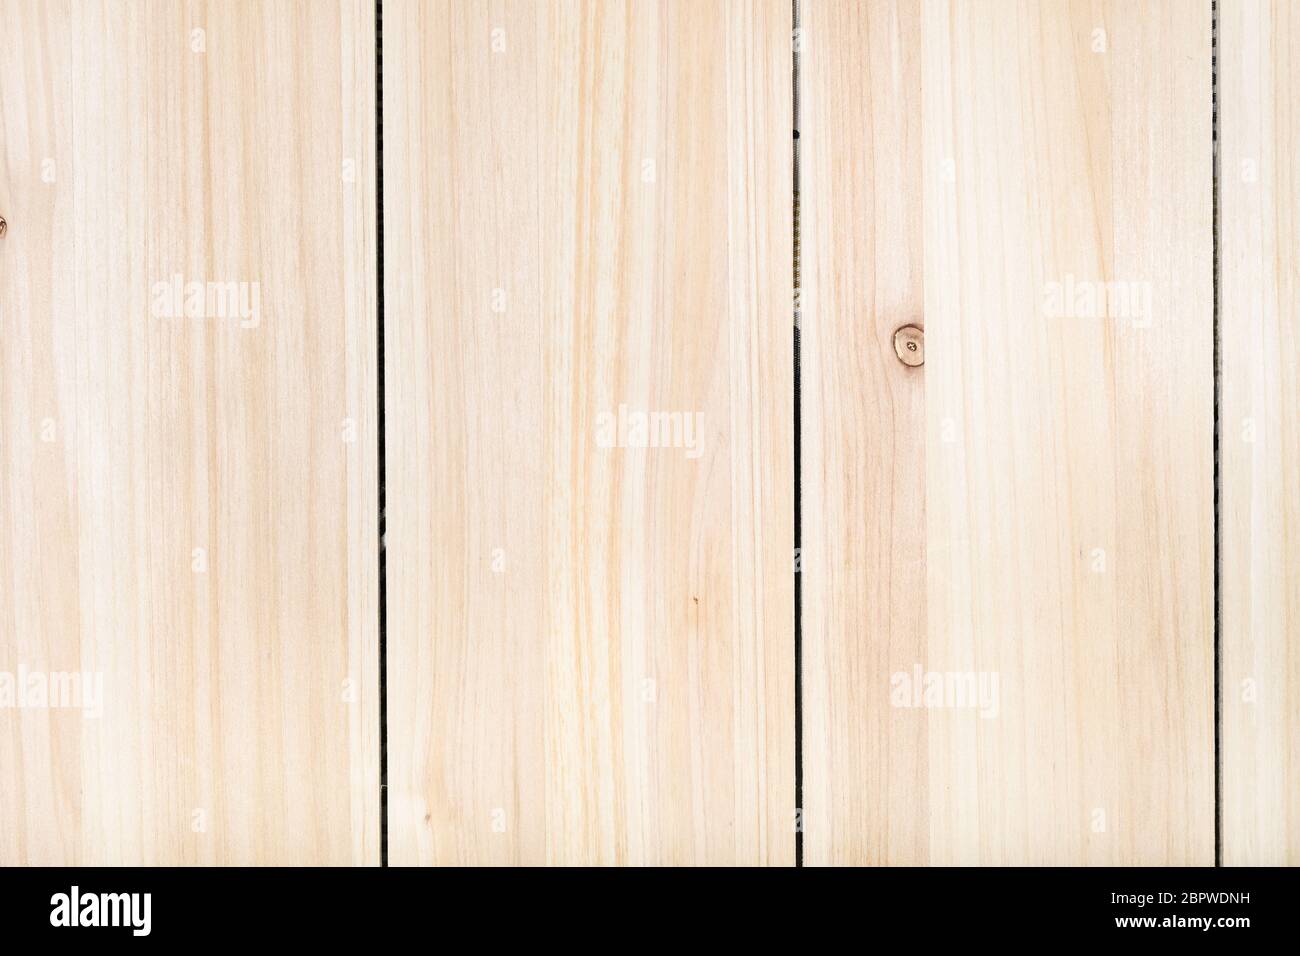 legno di fondo - pannello di legno non verniciato da assi verticali di pino largo Foto Stock